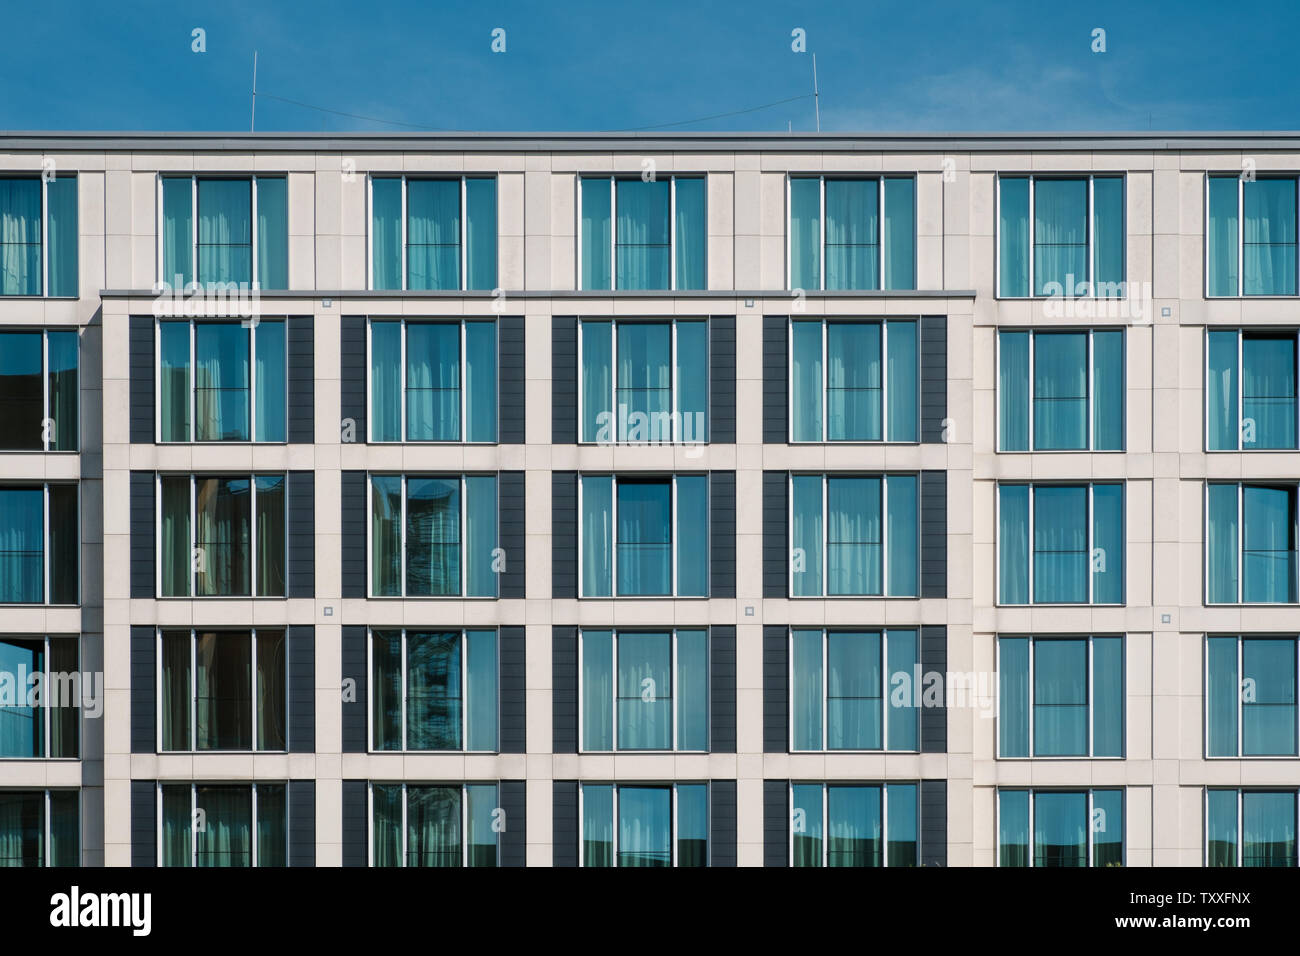 Fenster Fassade der modernen Hotelgebäude - Immobilien außen, Stockfoto